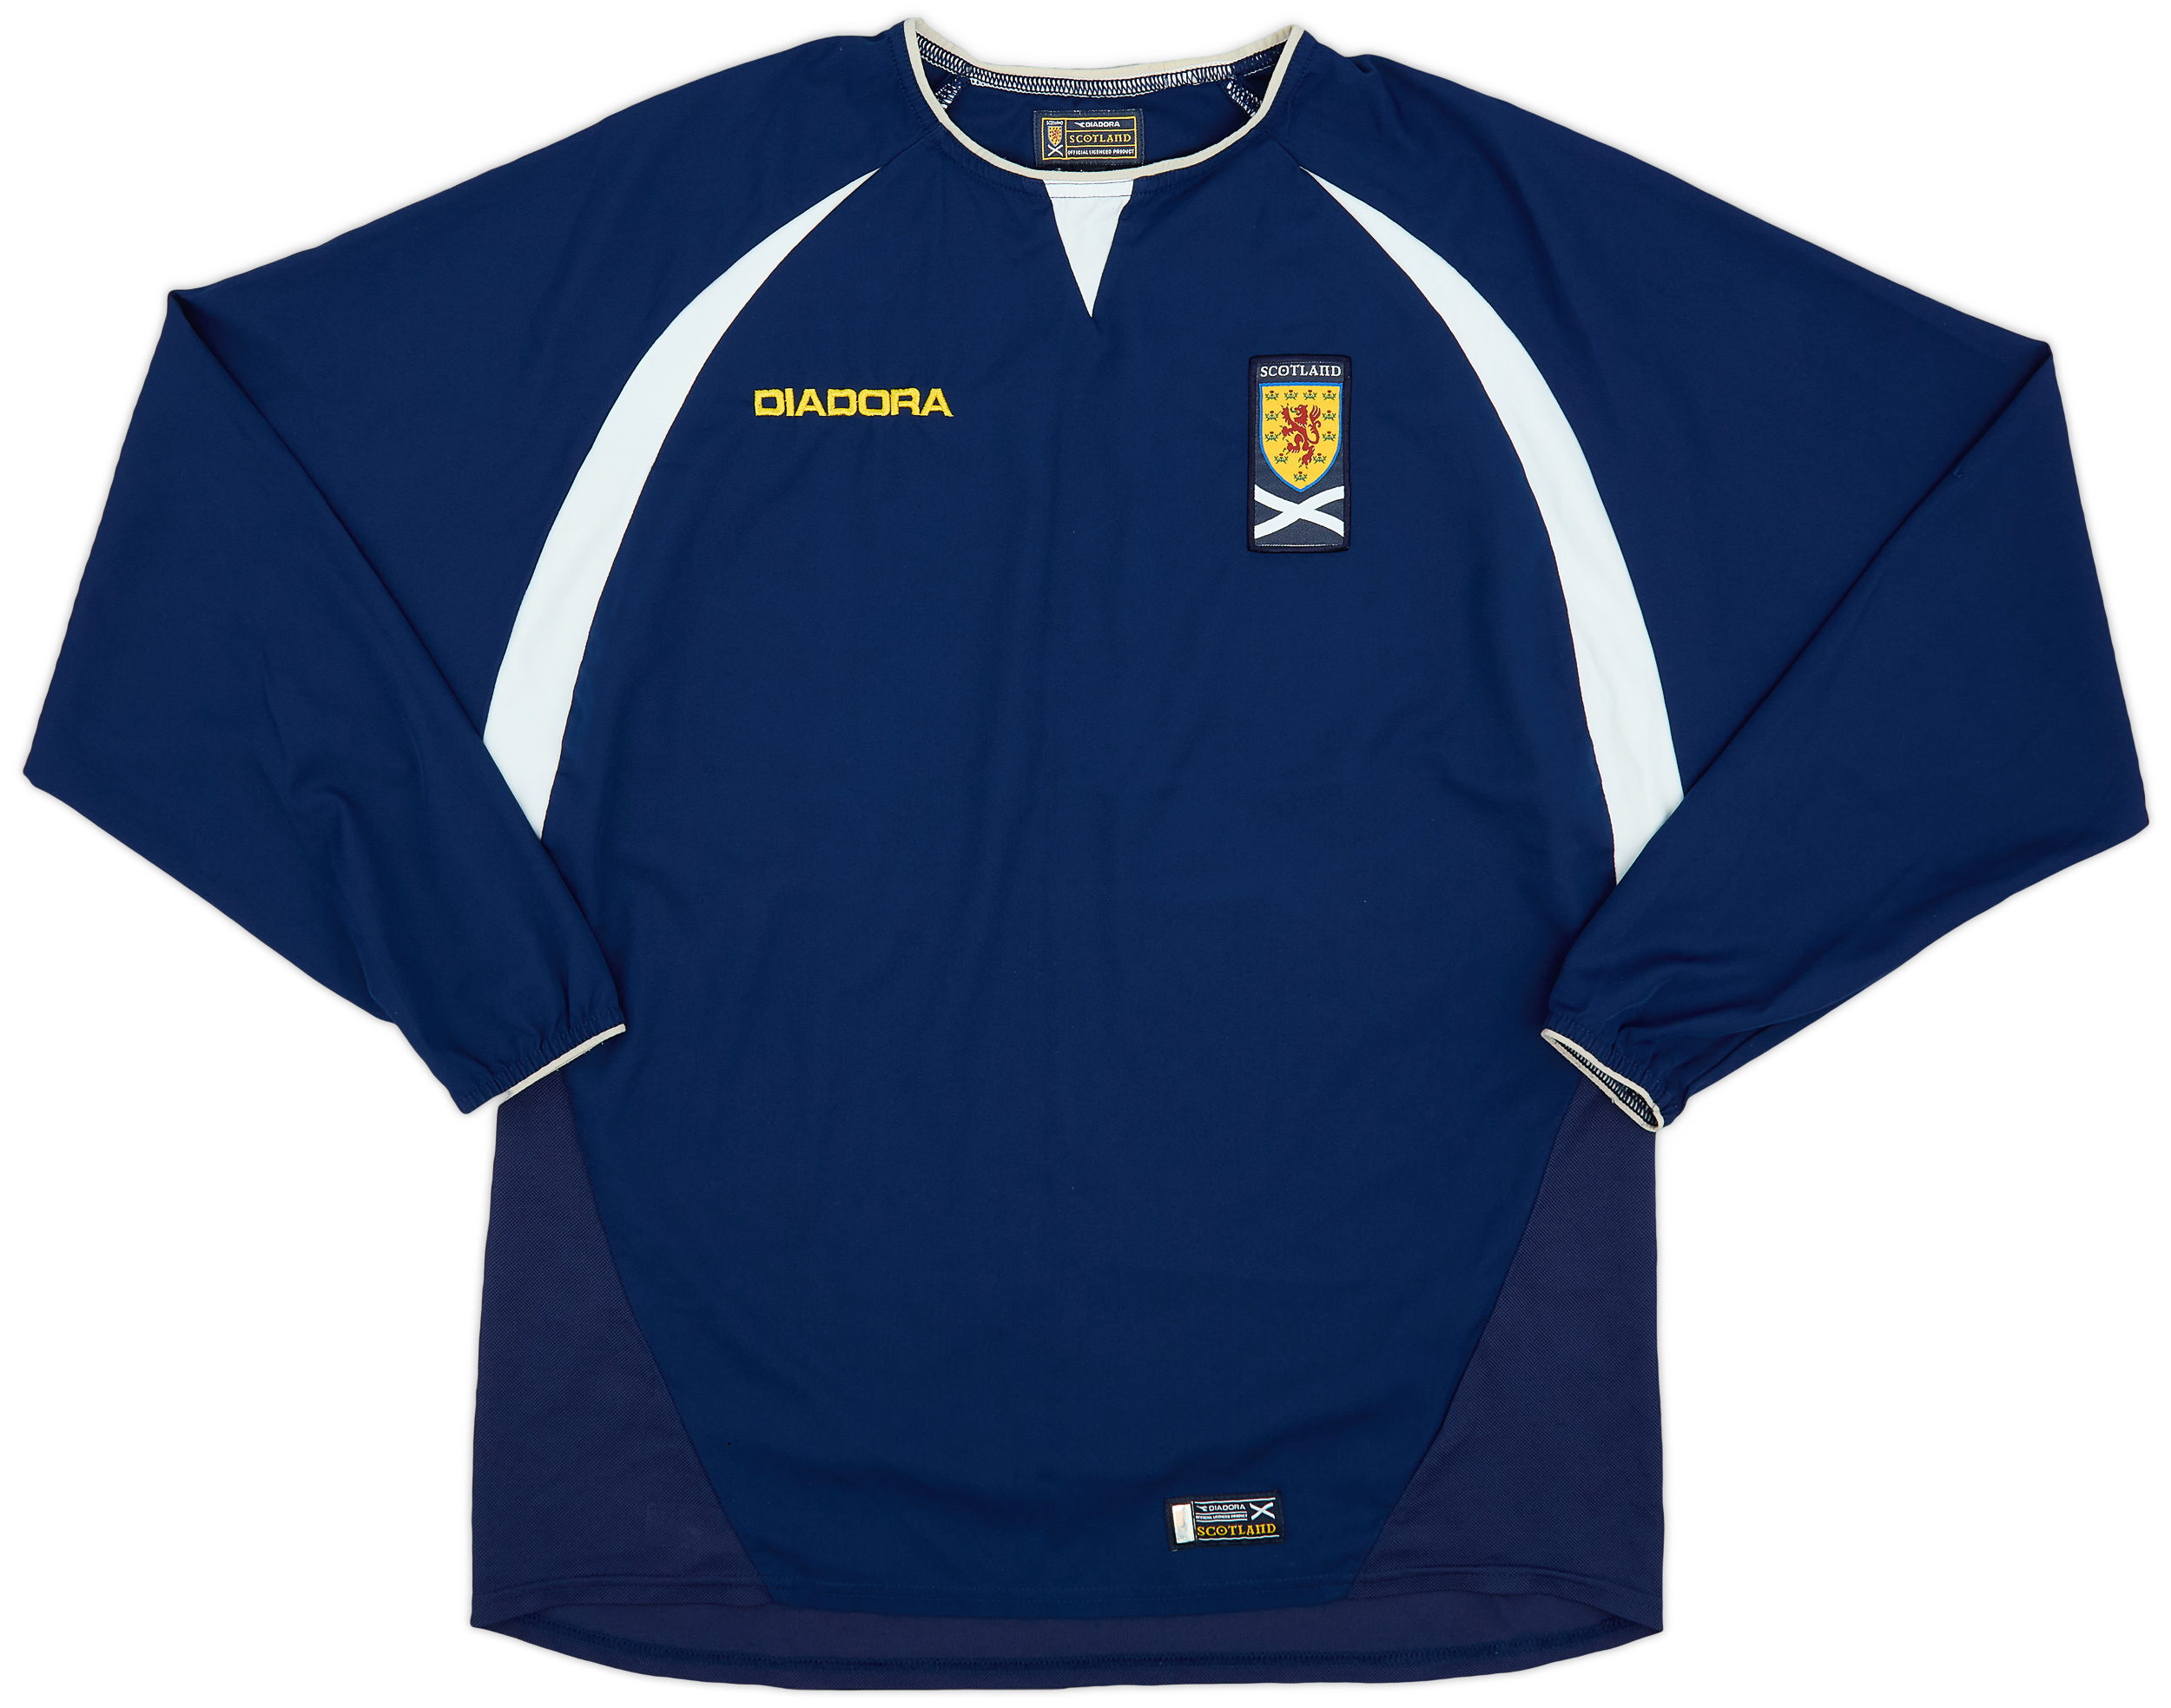 2003-05 Scotland Home Shirt - 9/10 - ()